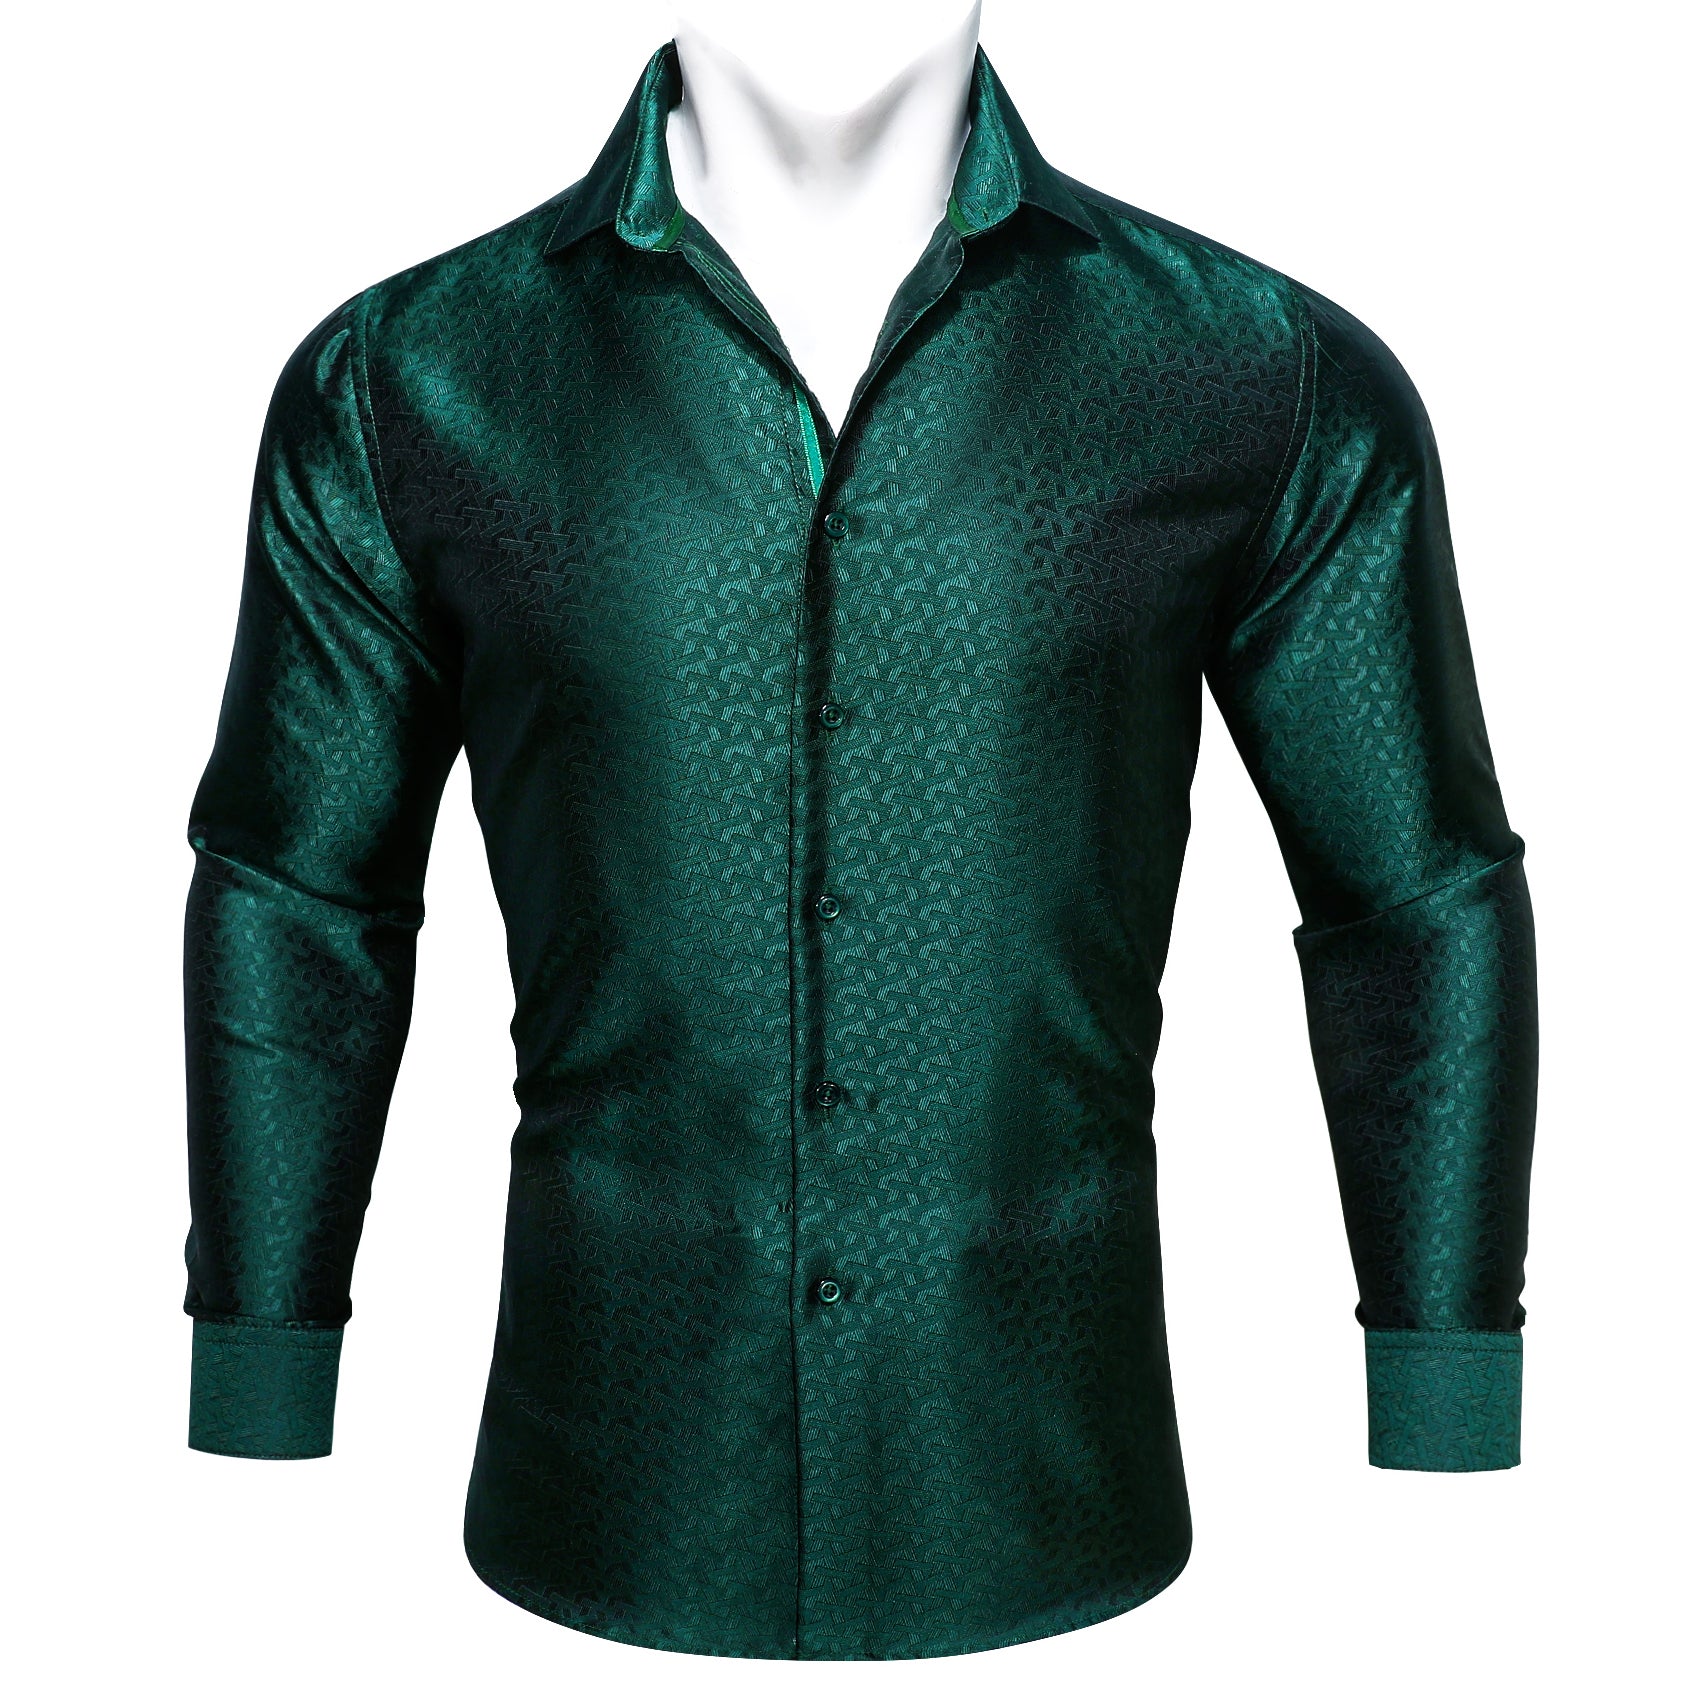 Barry.wang Green Solid Silk Men's Shirt